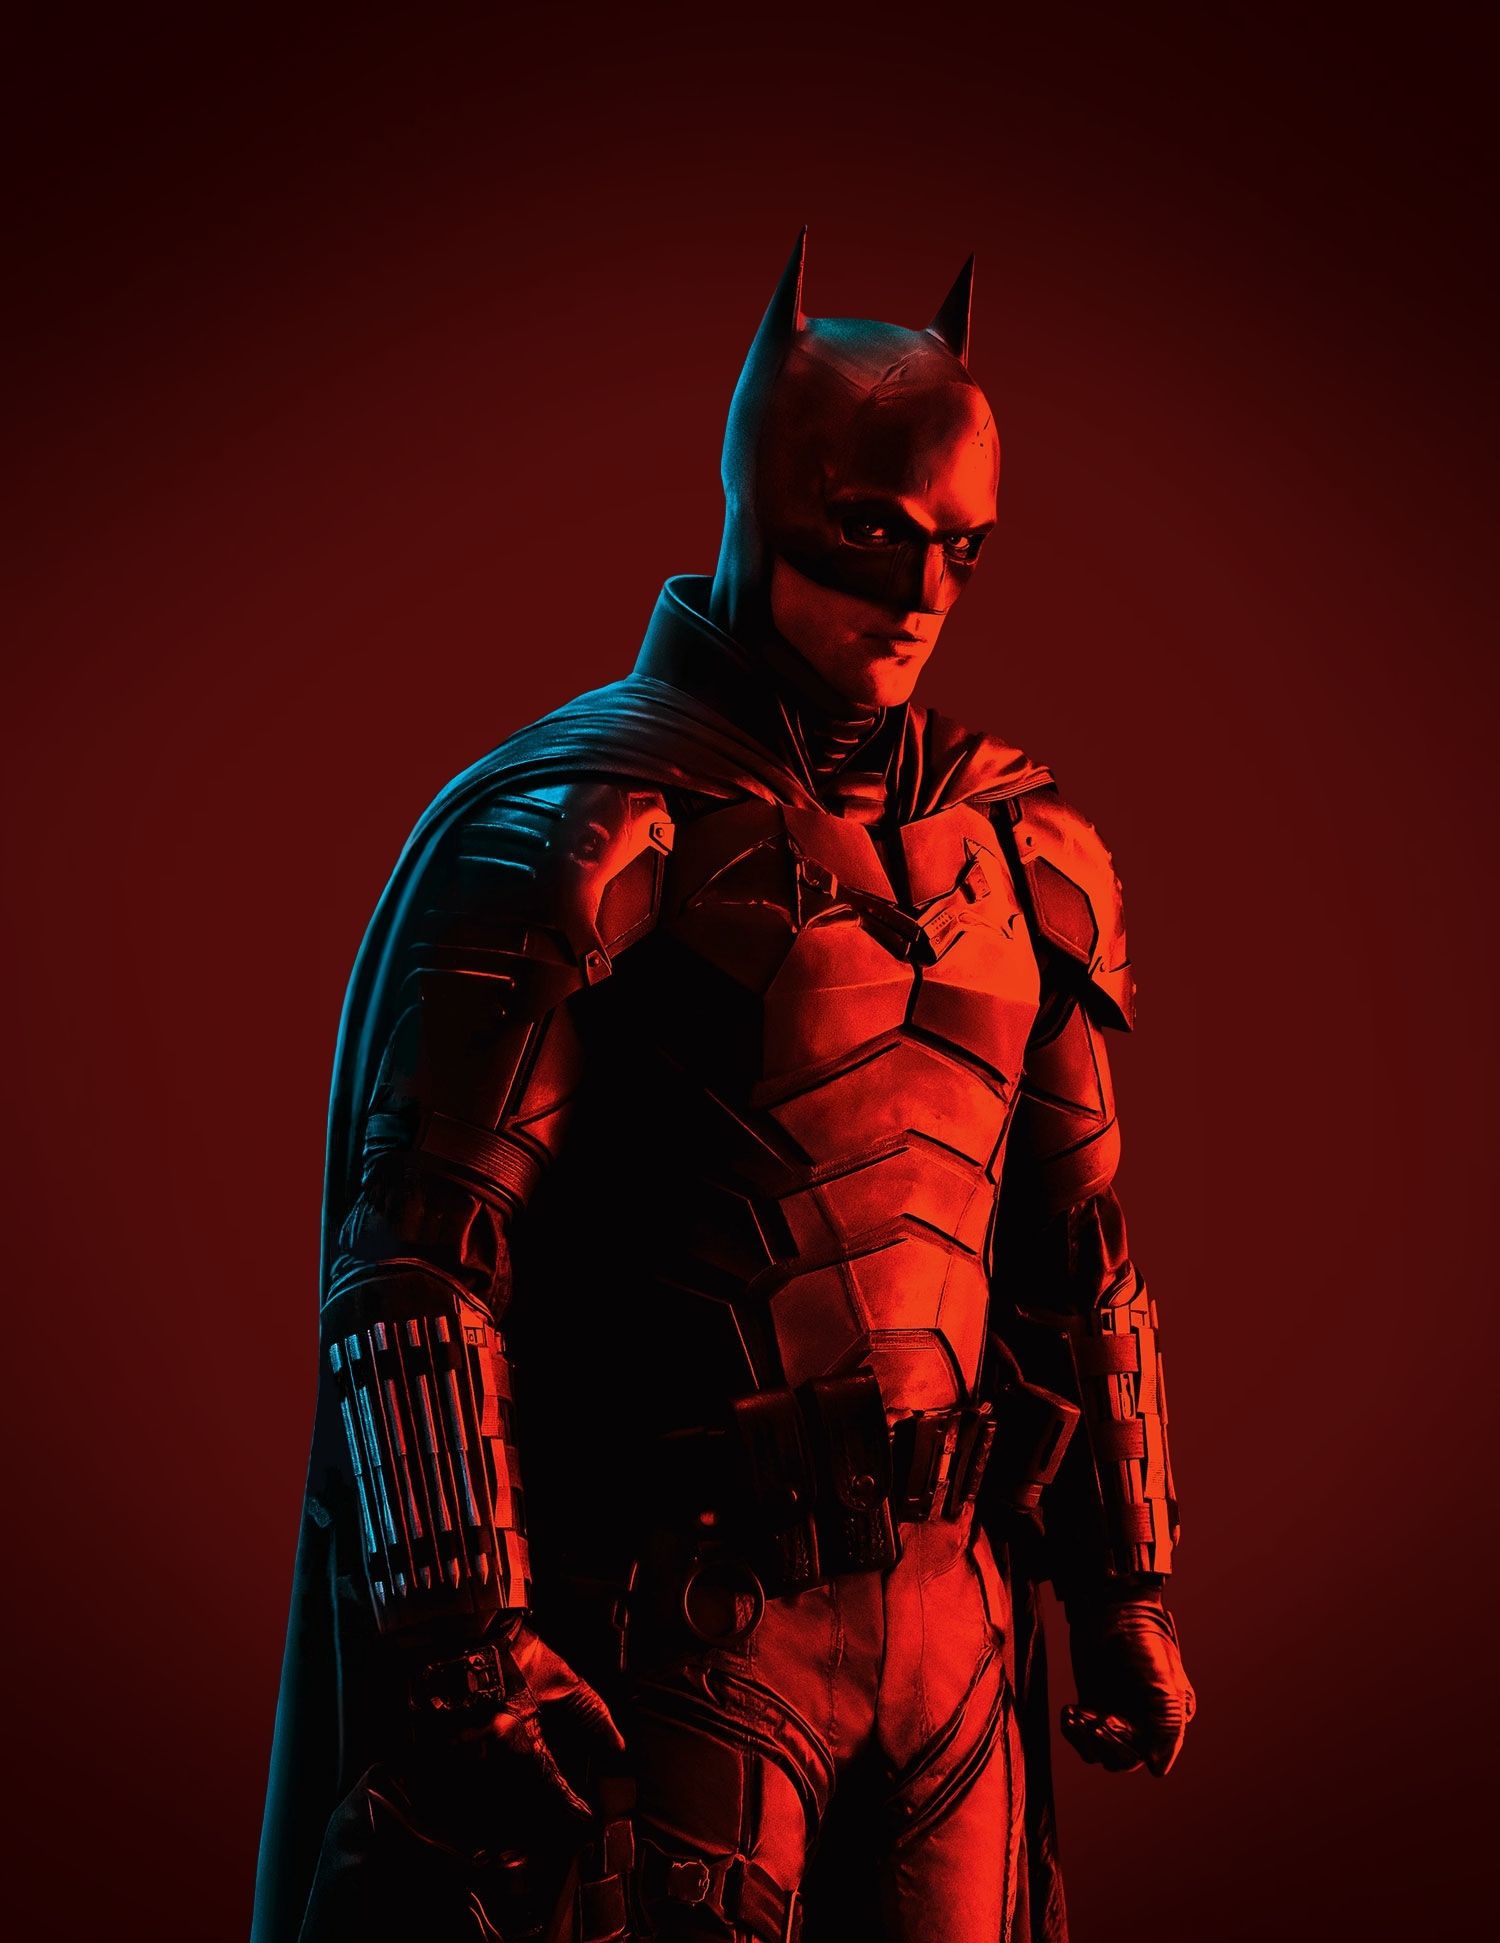 New Batman Pictures: 1st Look at R. Pattinson's Batman Suit